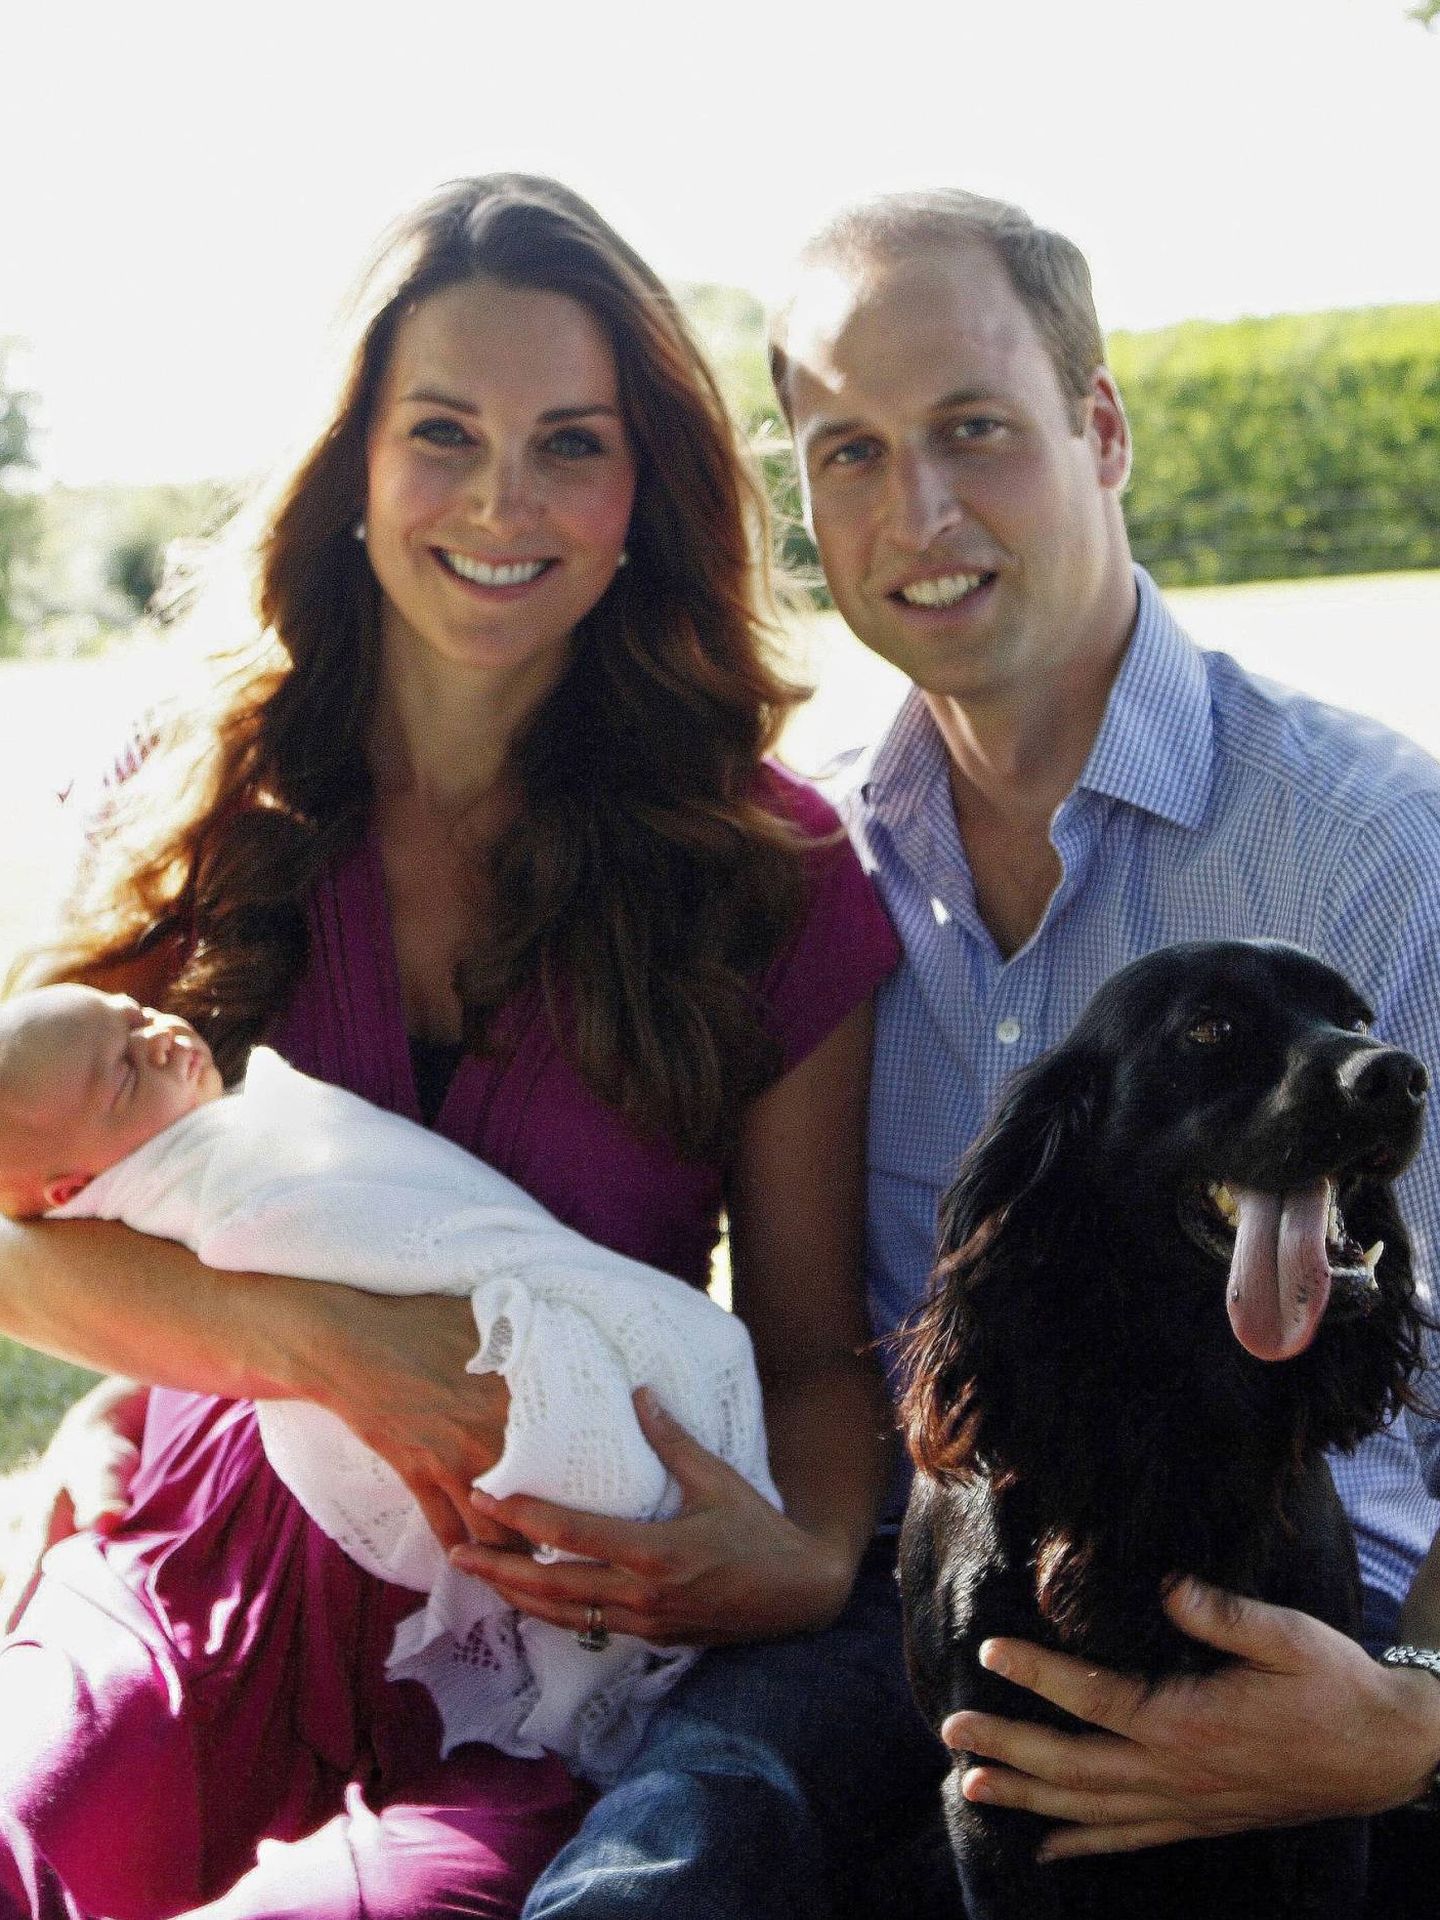 Guillermo y Kate, con el príncipe George en brazos y junto a su perro Lupo. (Michael Middleton, Palacio de Kensington)